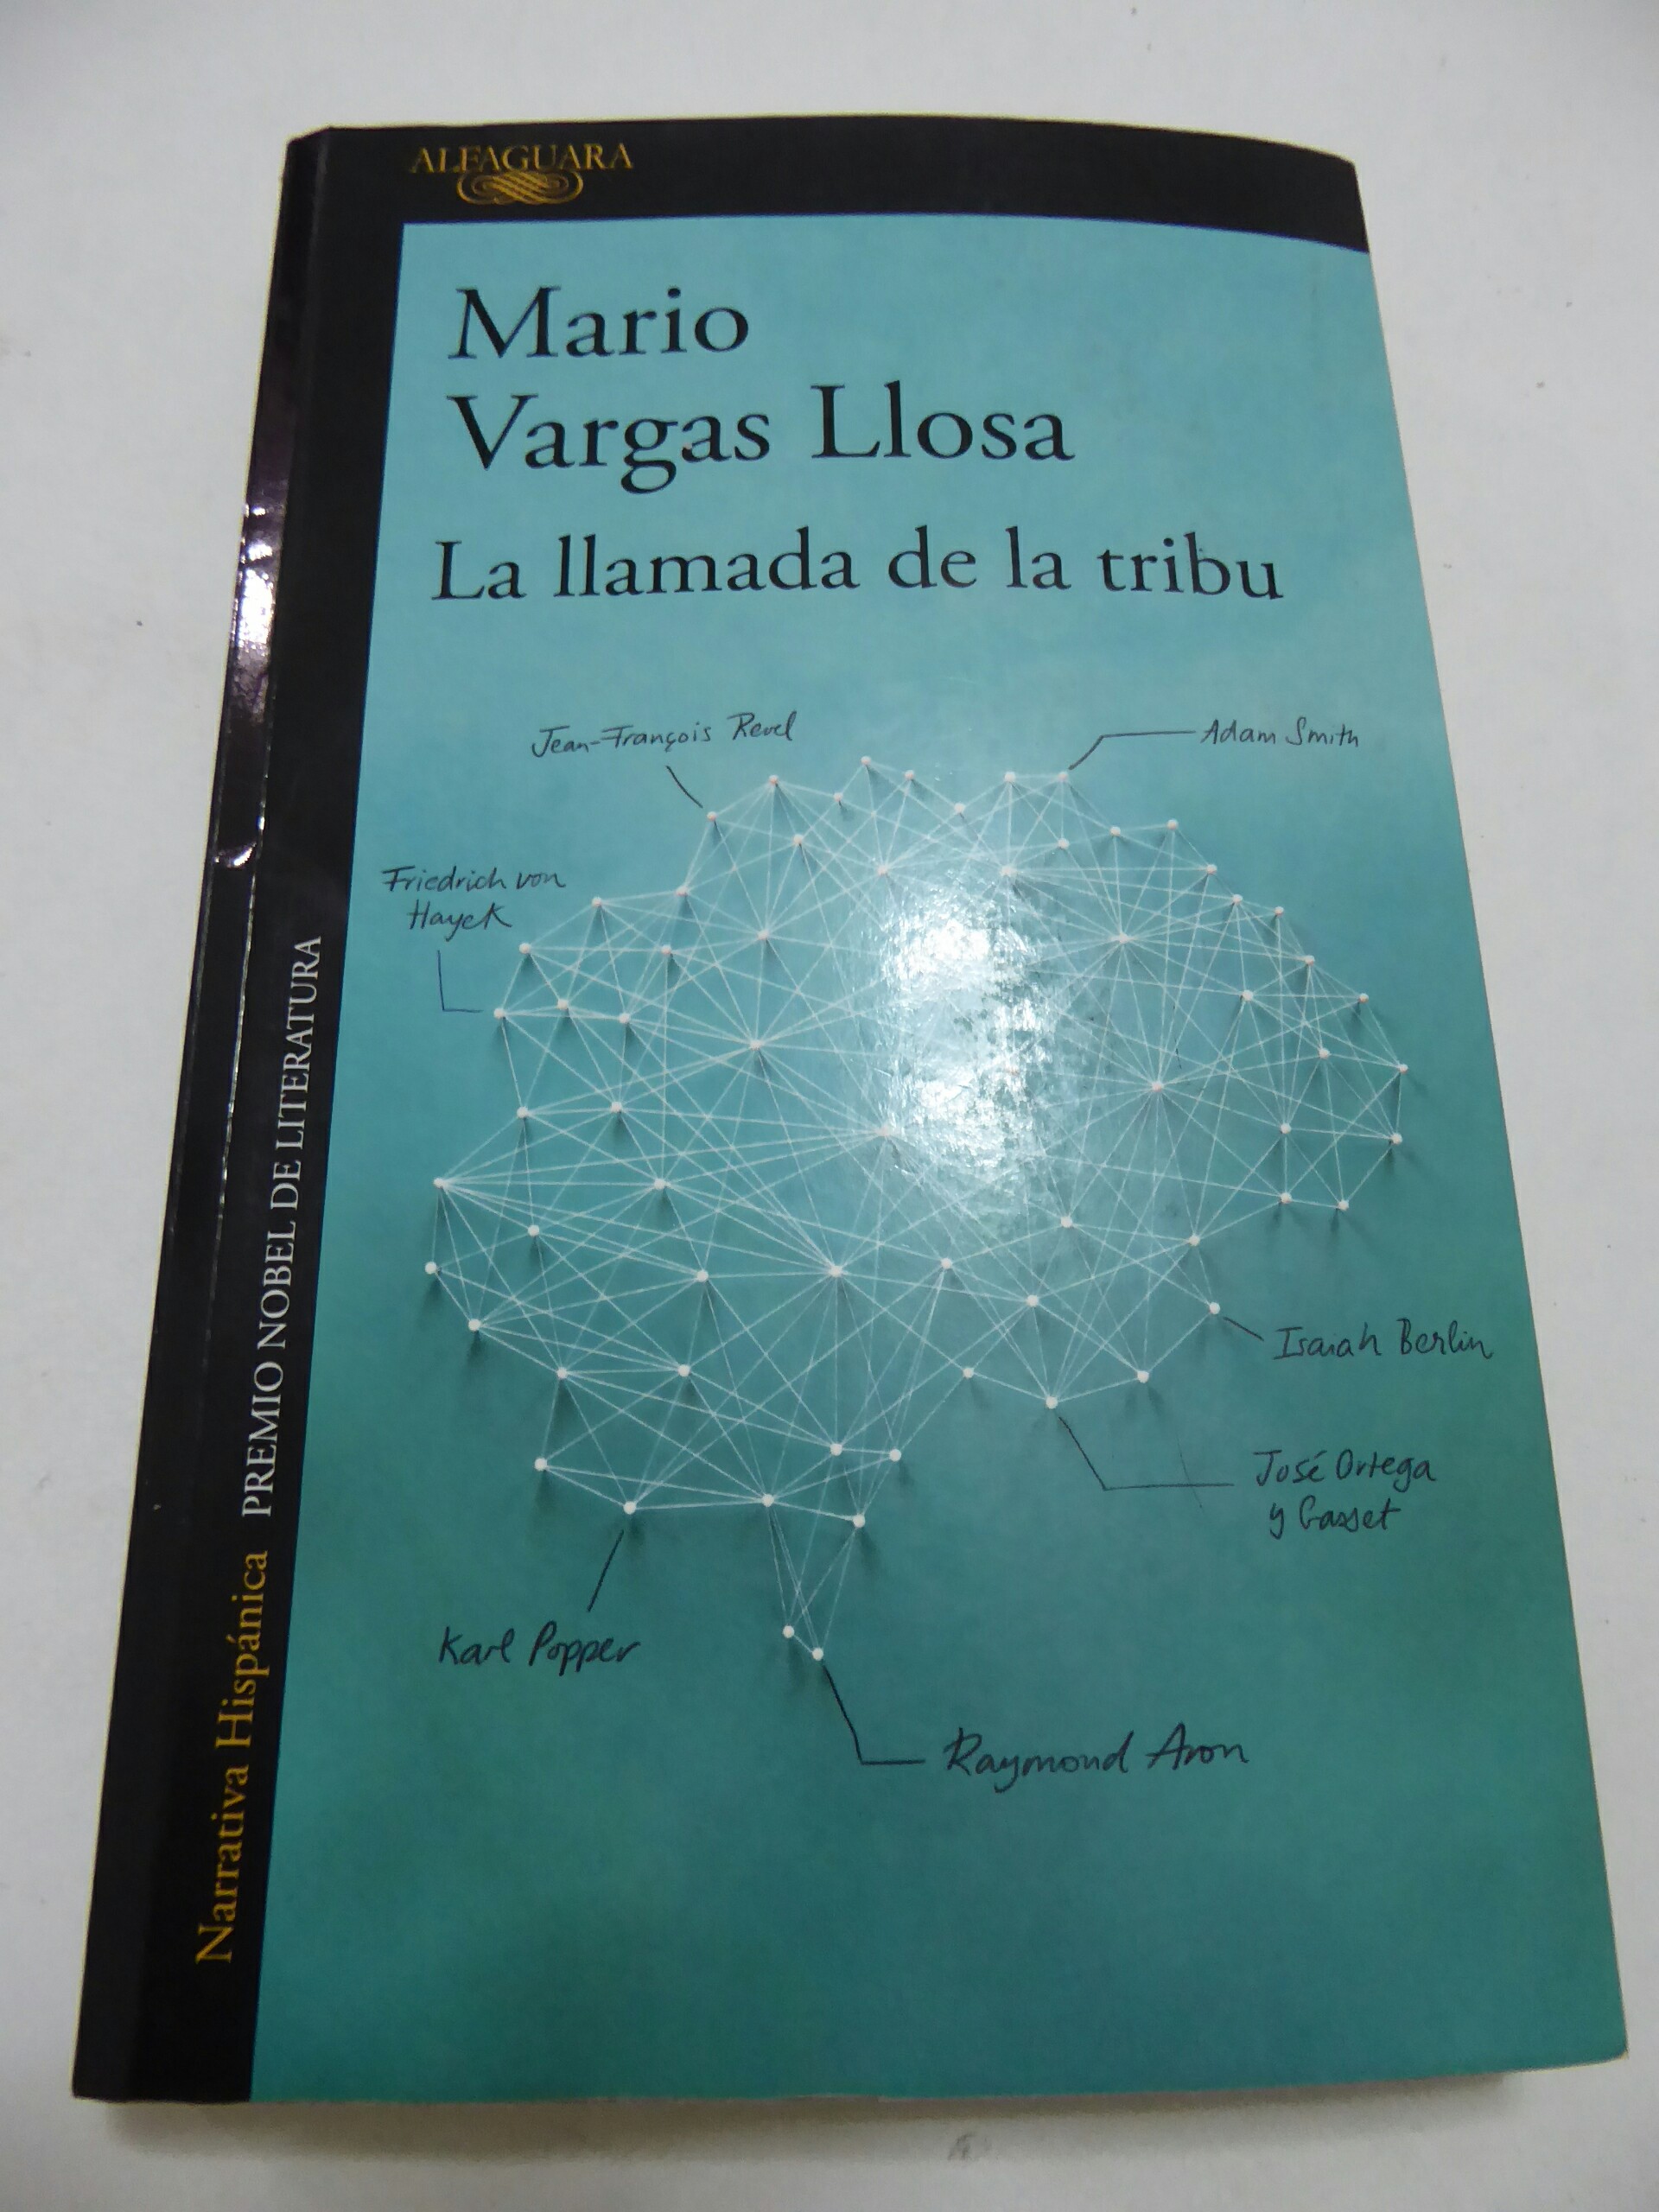 “La llamada de la tribu” por Mario Vargas Llosa